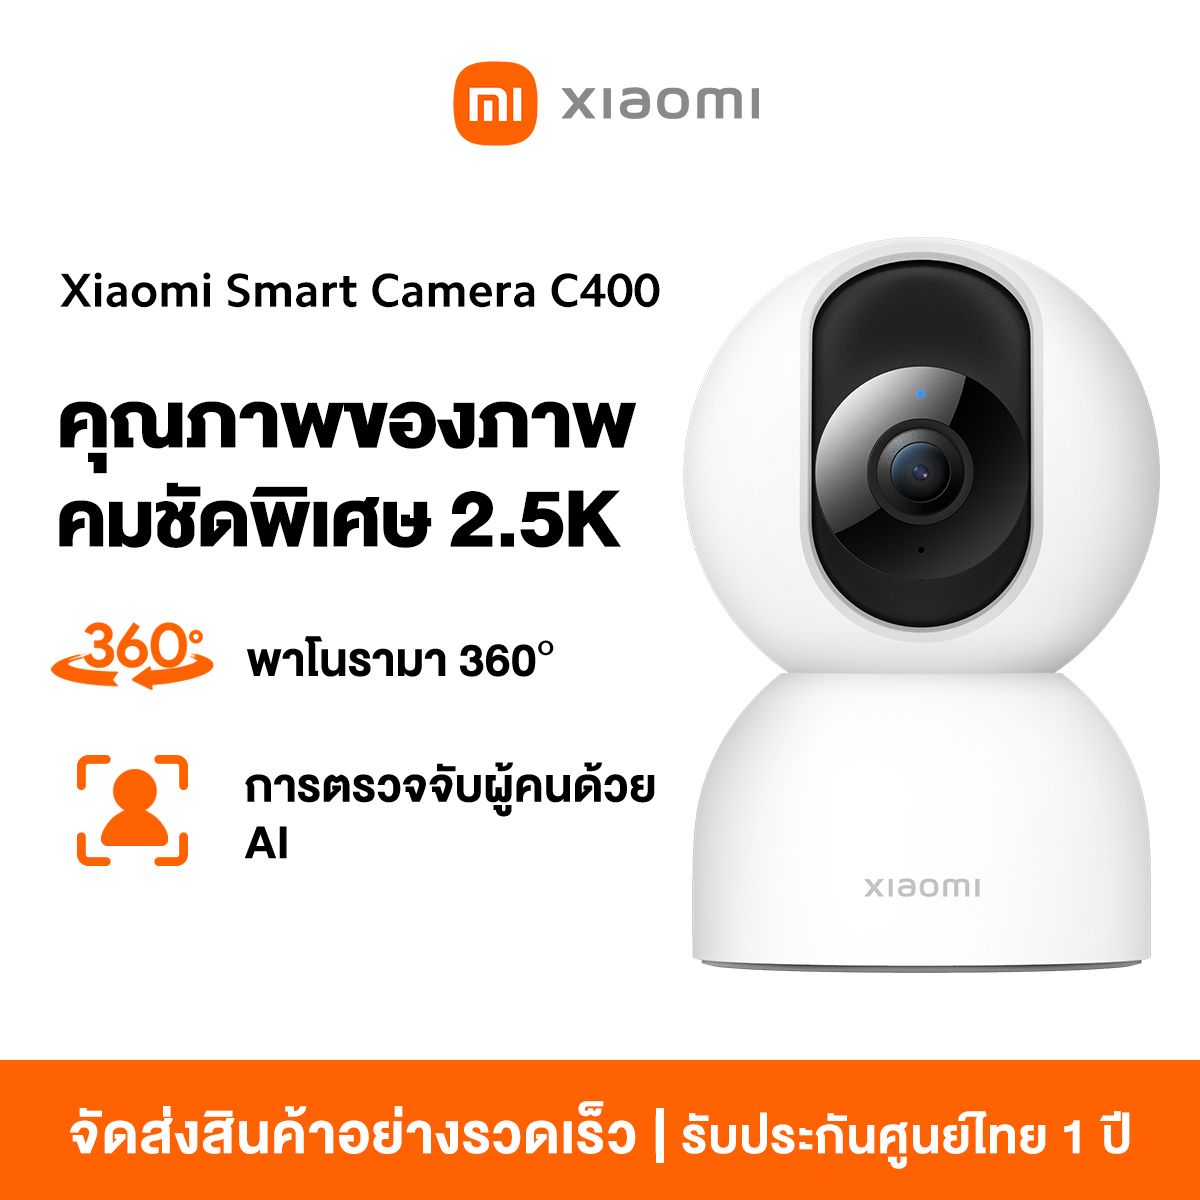 Xiaomi Smart Camera C300 กล้องวงจรปิด (ประกันศูนย์ไทย 1 ปี)